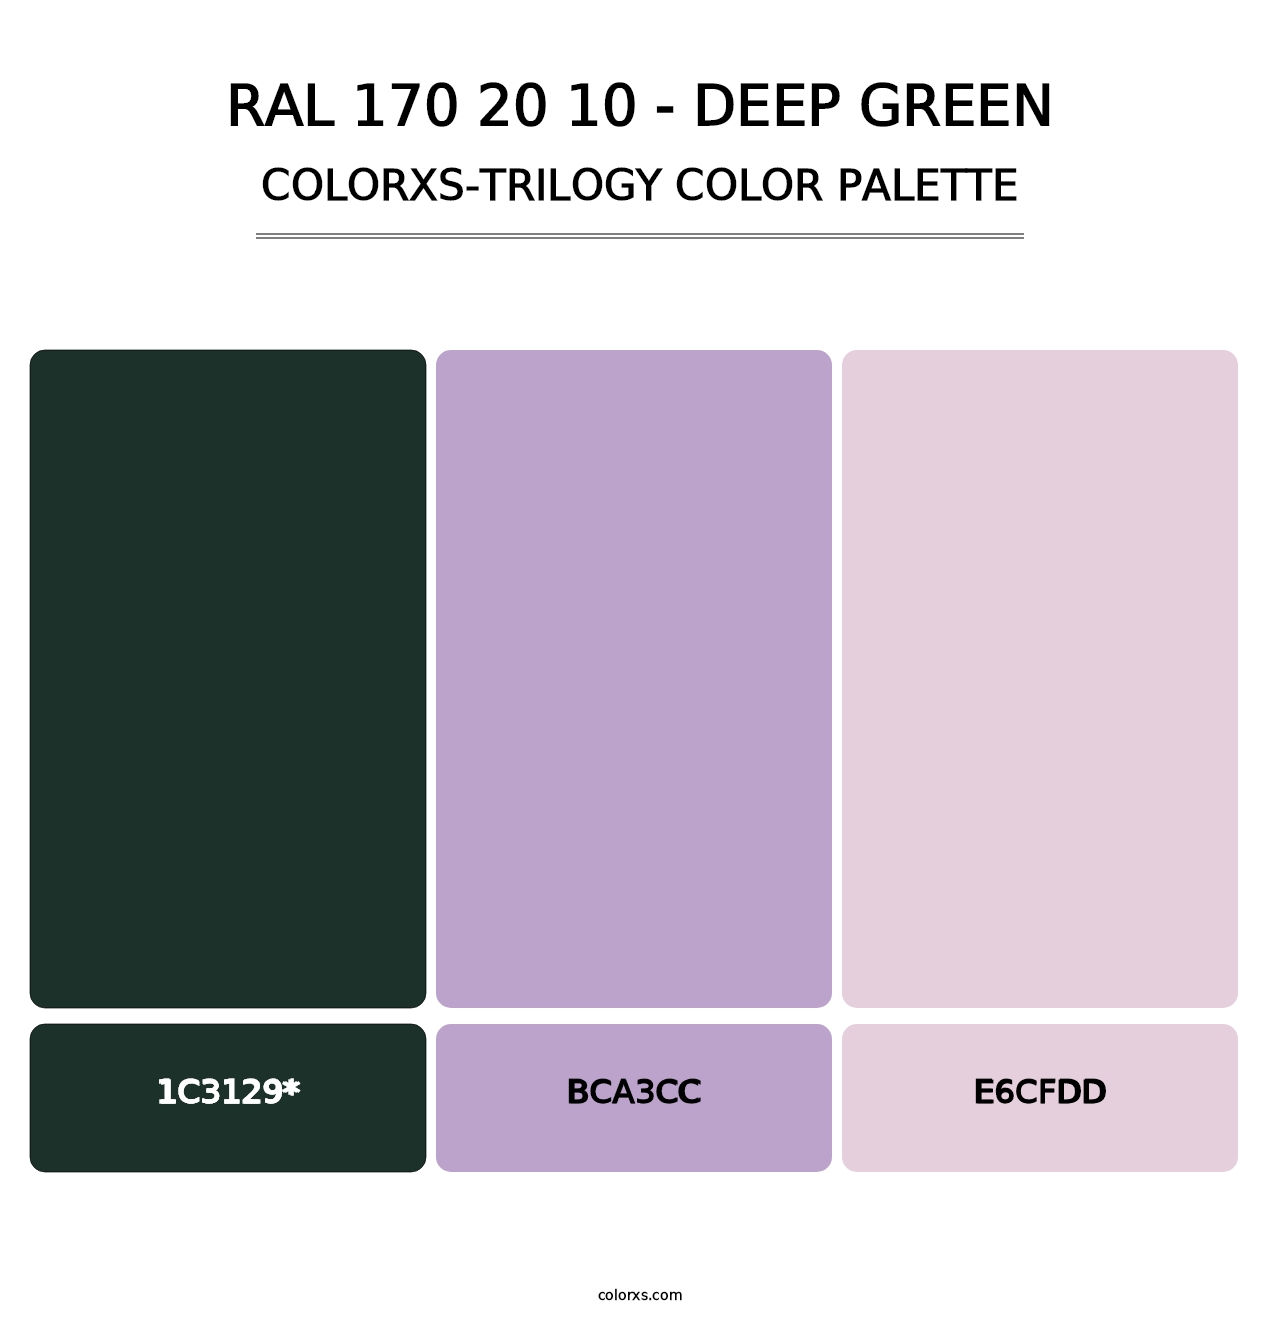 RAL 170 20 10 - Deep Green - Colorxs Trilogy Palette